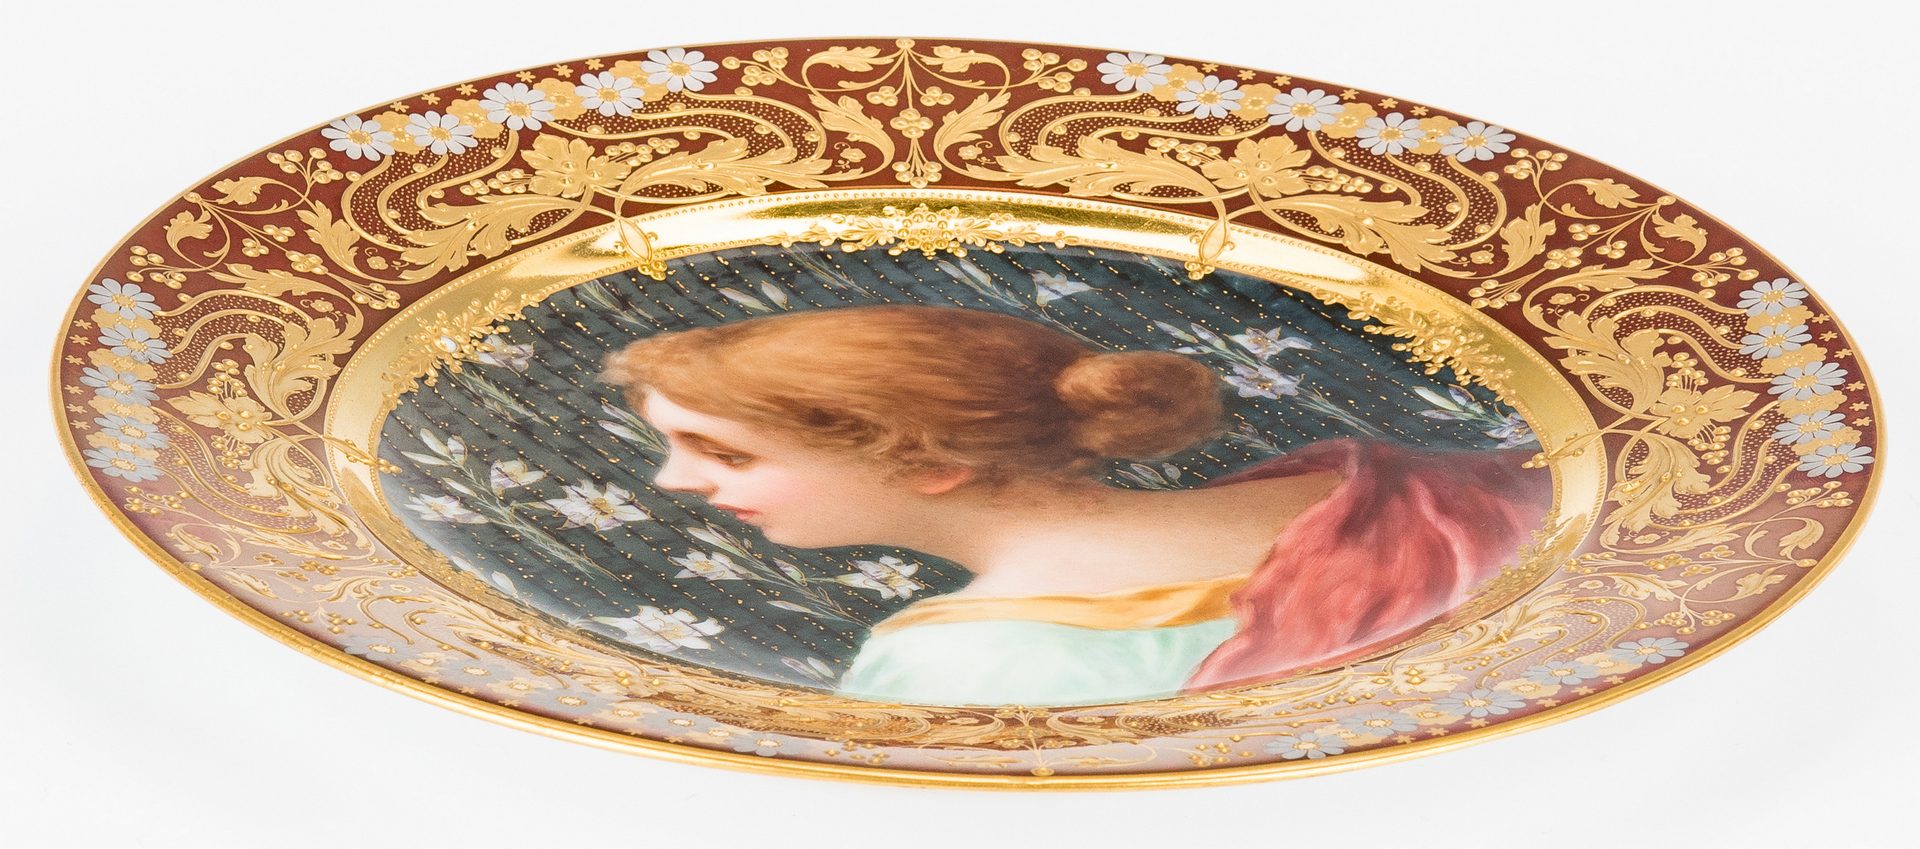 Lot 225: Royal Vienna Style Art Nouveau Cabinet Plate, "Cacilie"